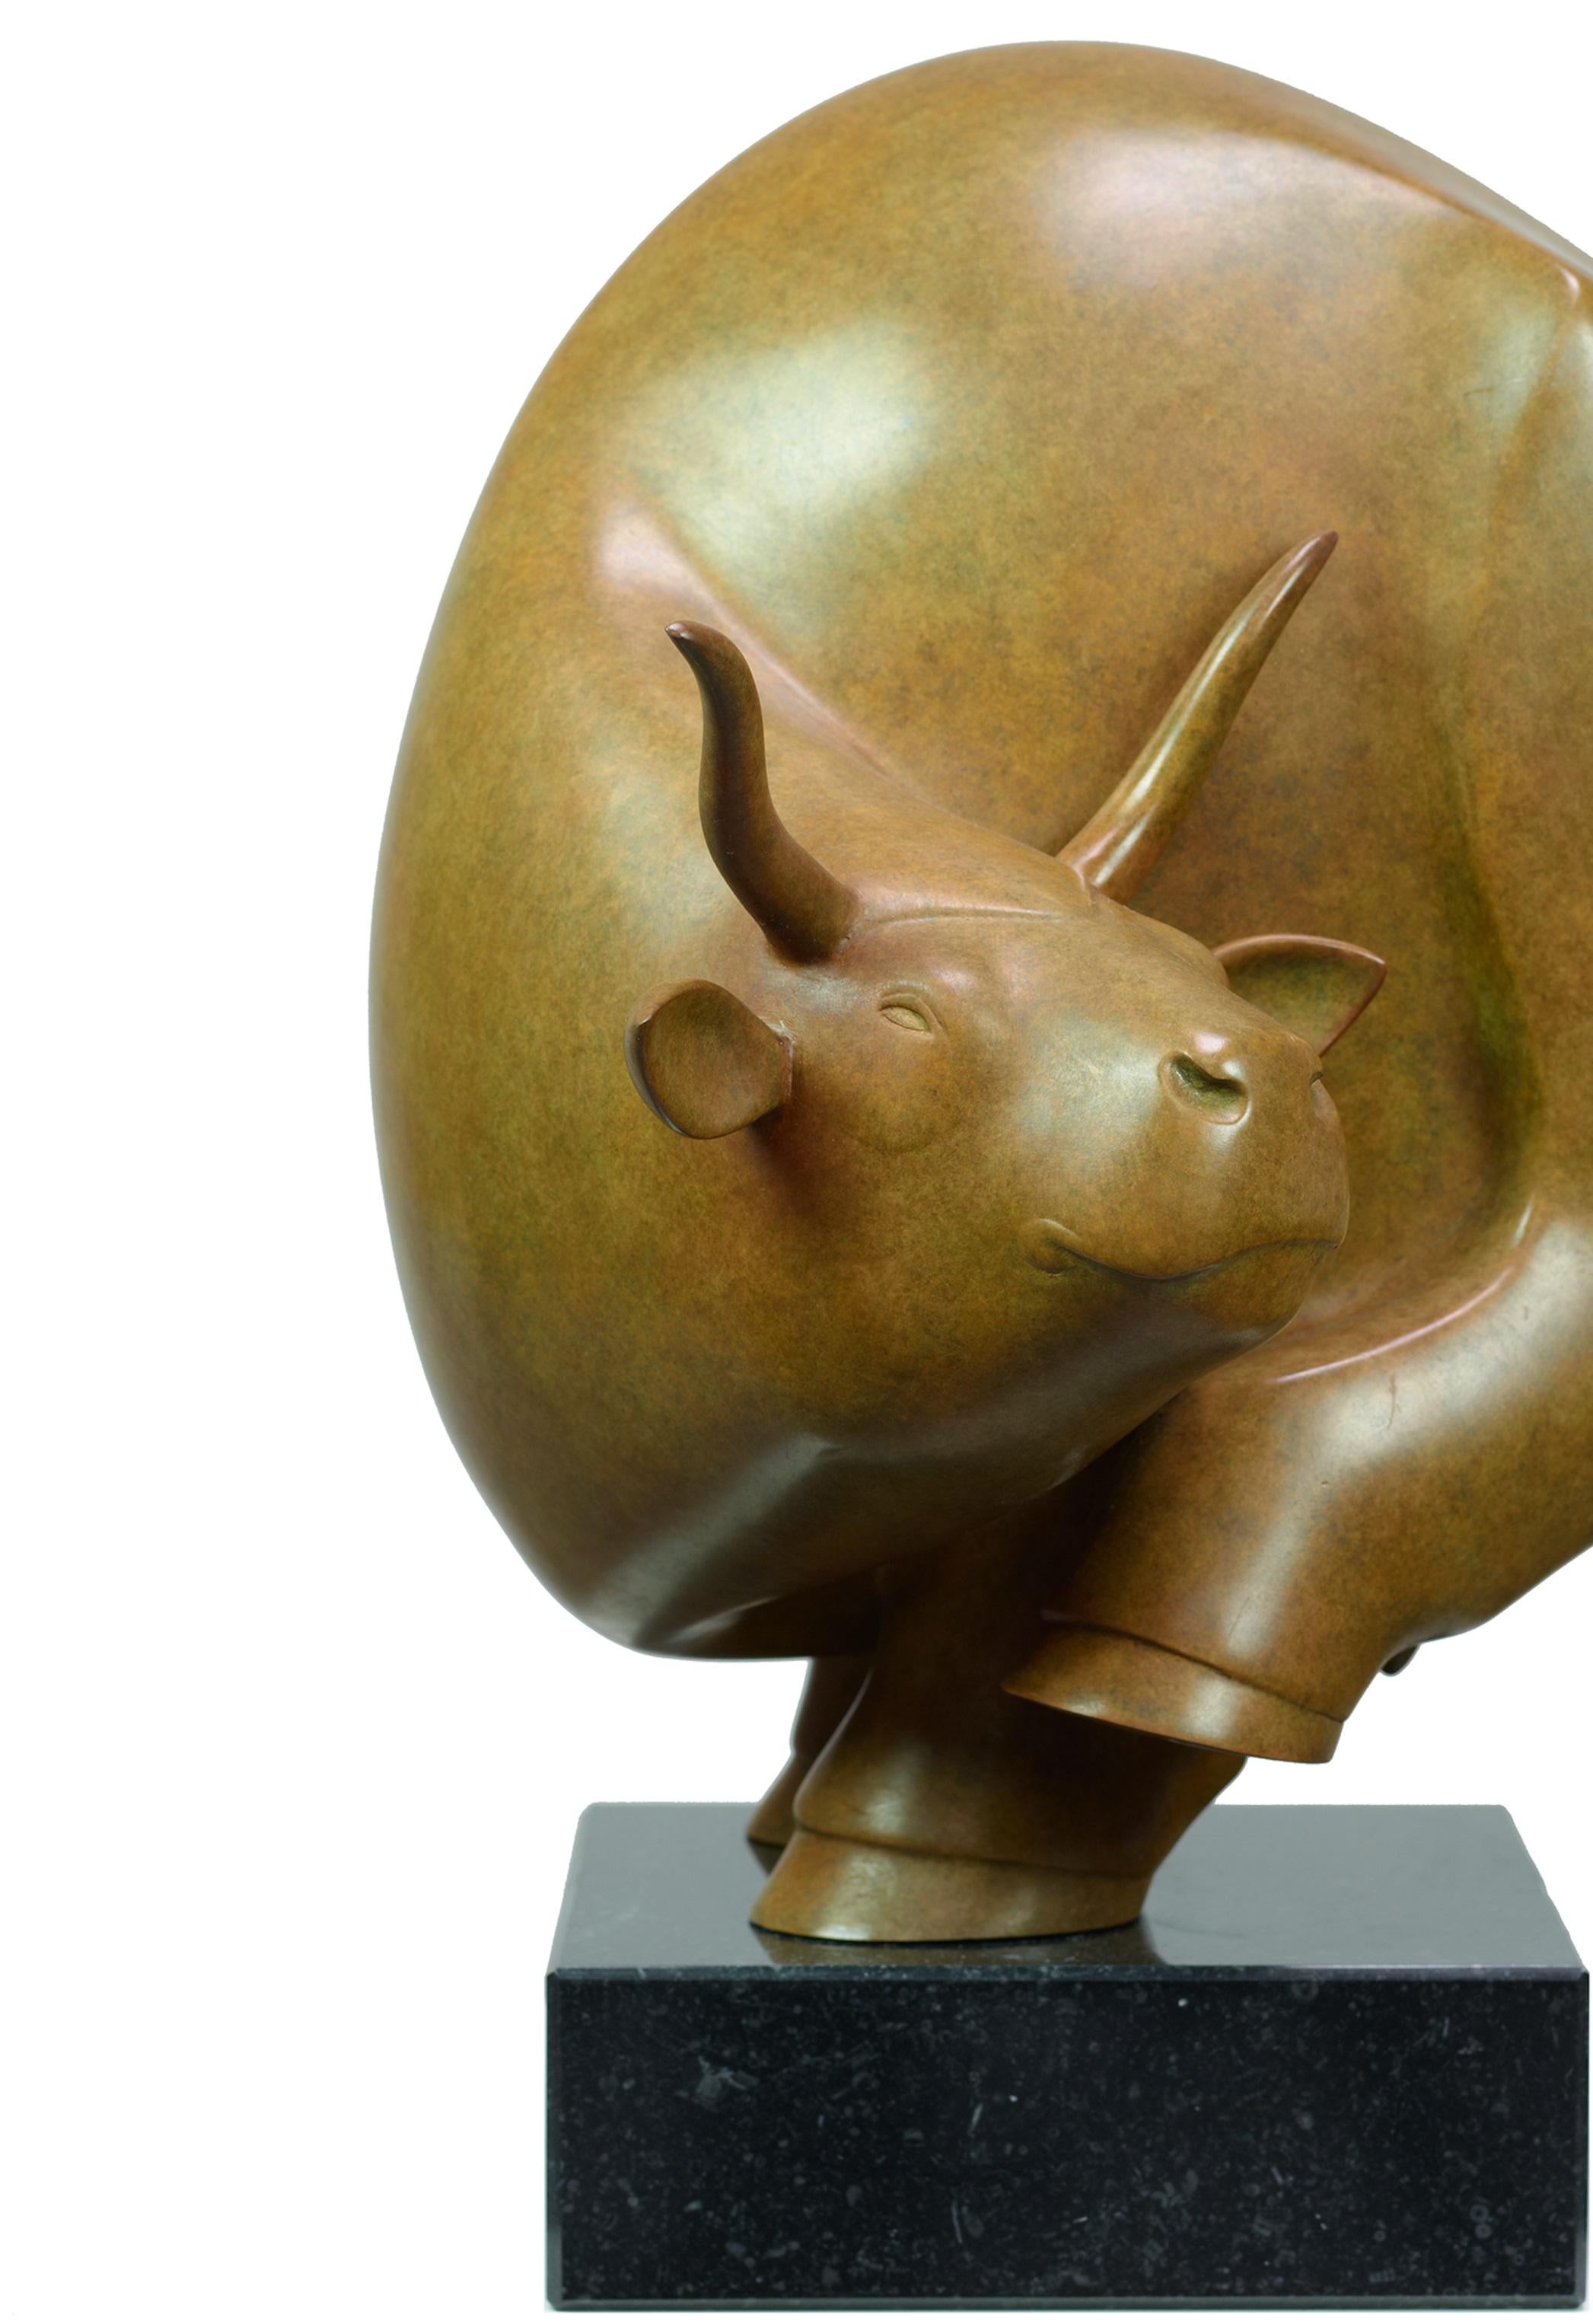 Stier Klein Bull Petite Sculpture en bronze Animal Contemporary
Evert den Hartog (né à Groot-Ammers, aux Pays-Bas, en 1949) a suivi une formation de sculpteur à l'Académie des arts visuels de Rotterdam. Dans les années 1971-1976, ses professeurs de